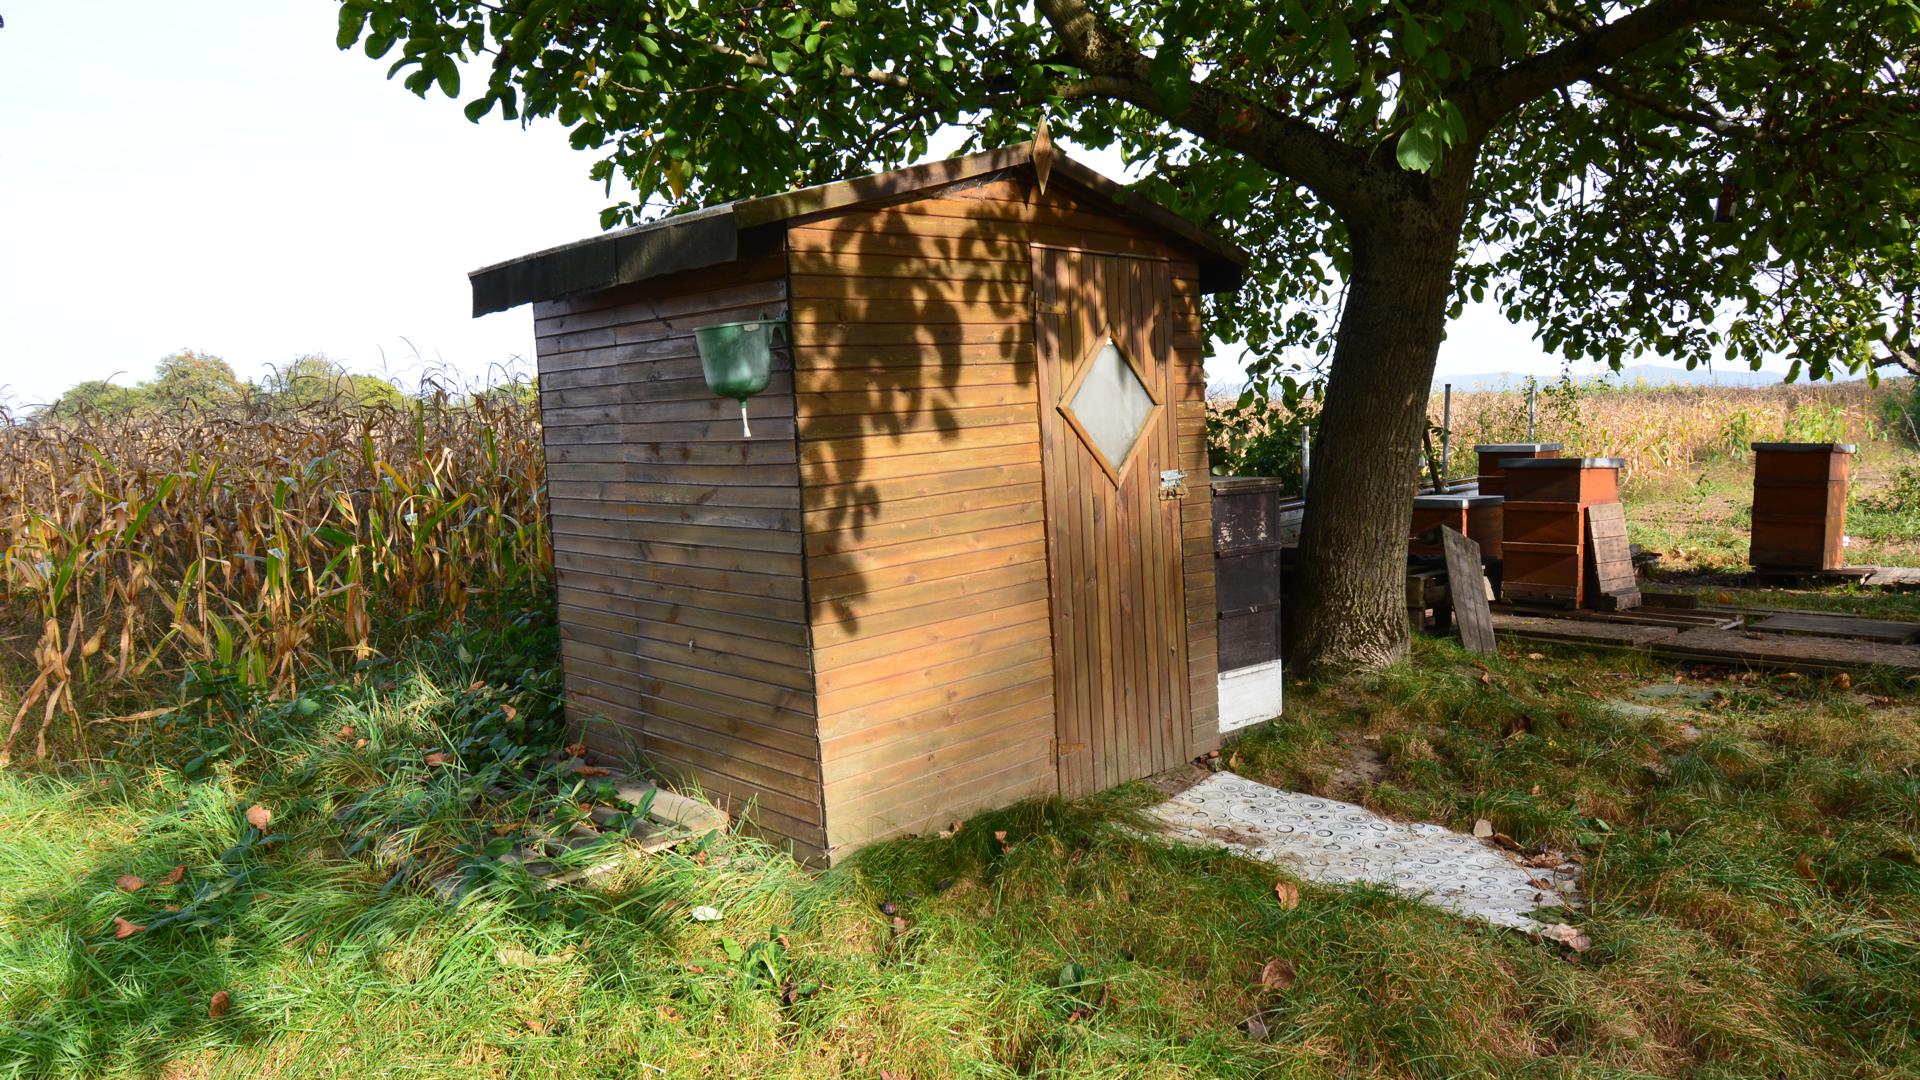 Die Fotos zeigen eine Gartenhütte, vergleichbar denen, um die es in dem ersten Artikel geht. Die Aufnahem stammt von einem Feld in Rastatt.